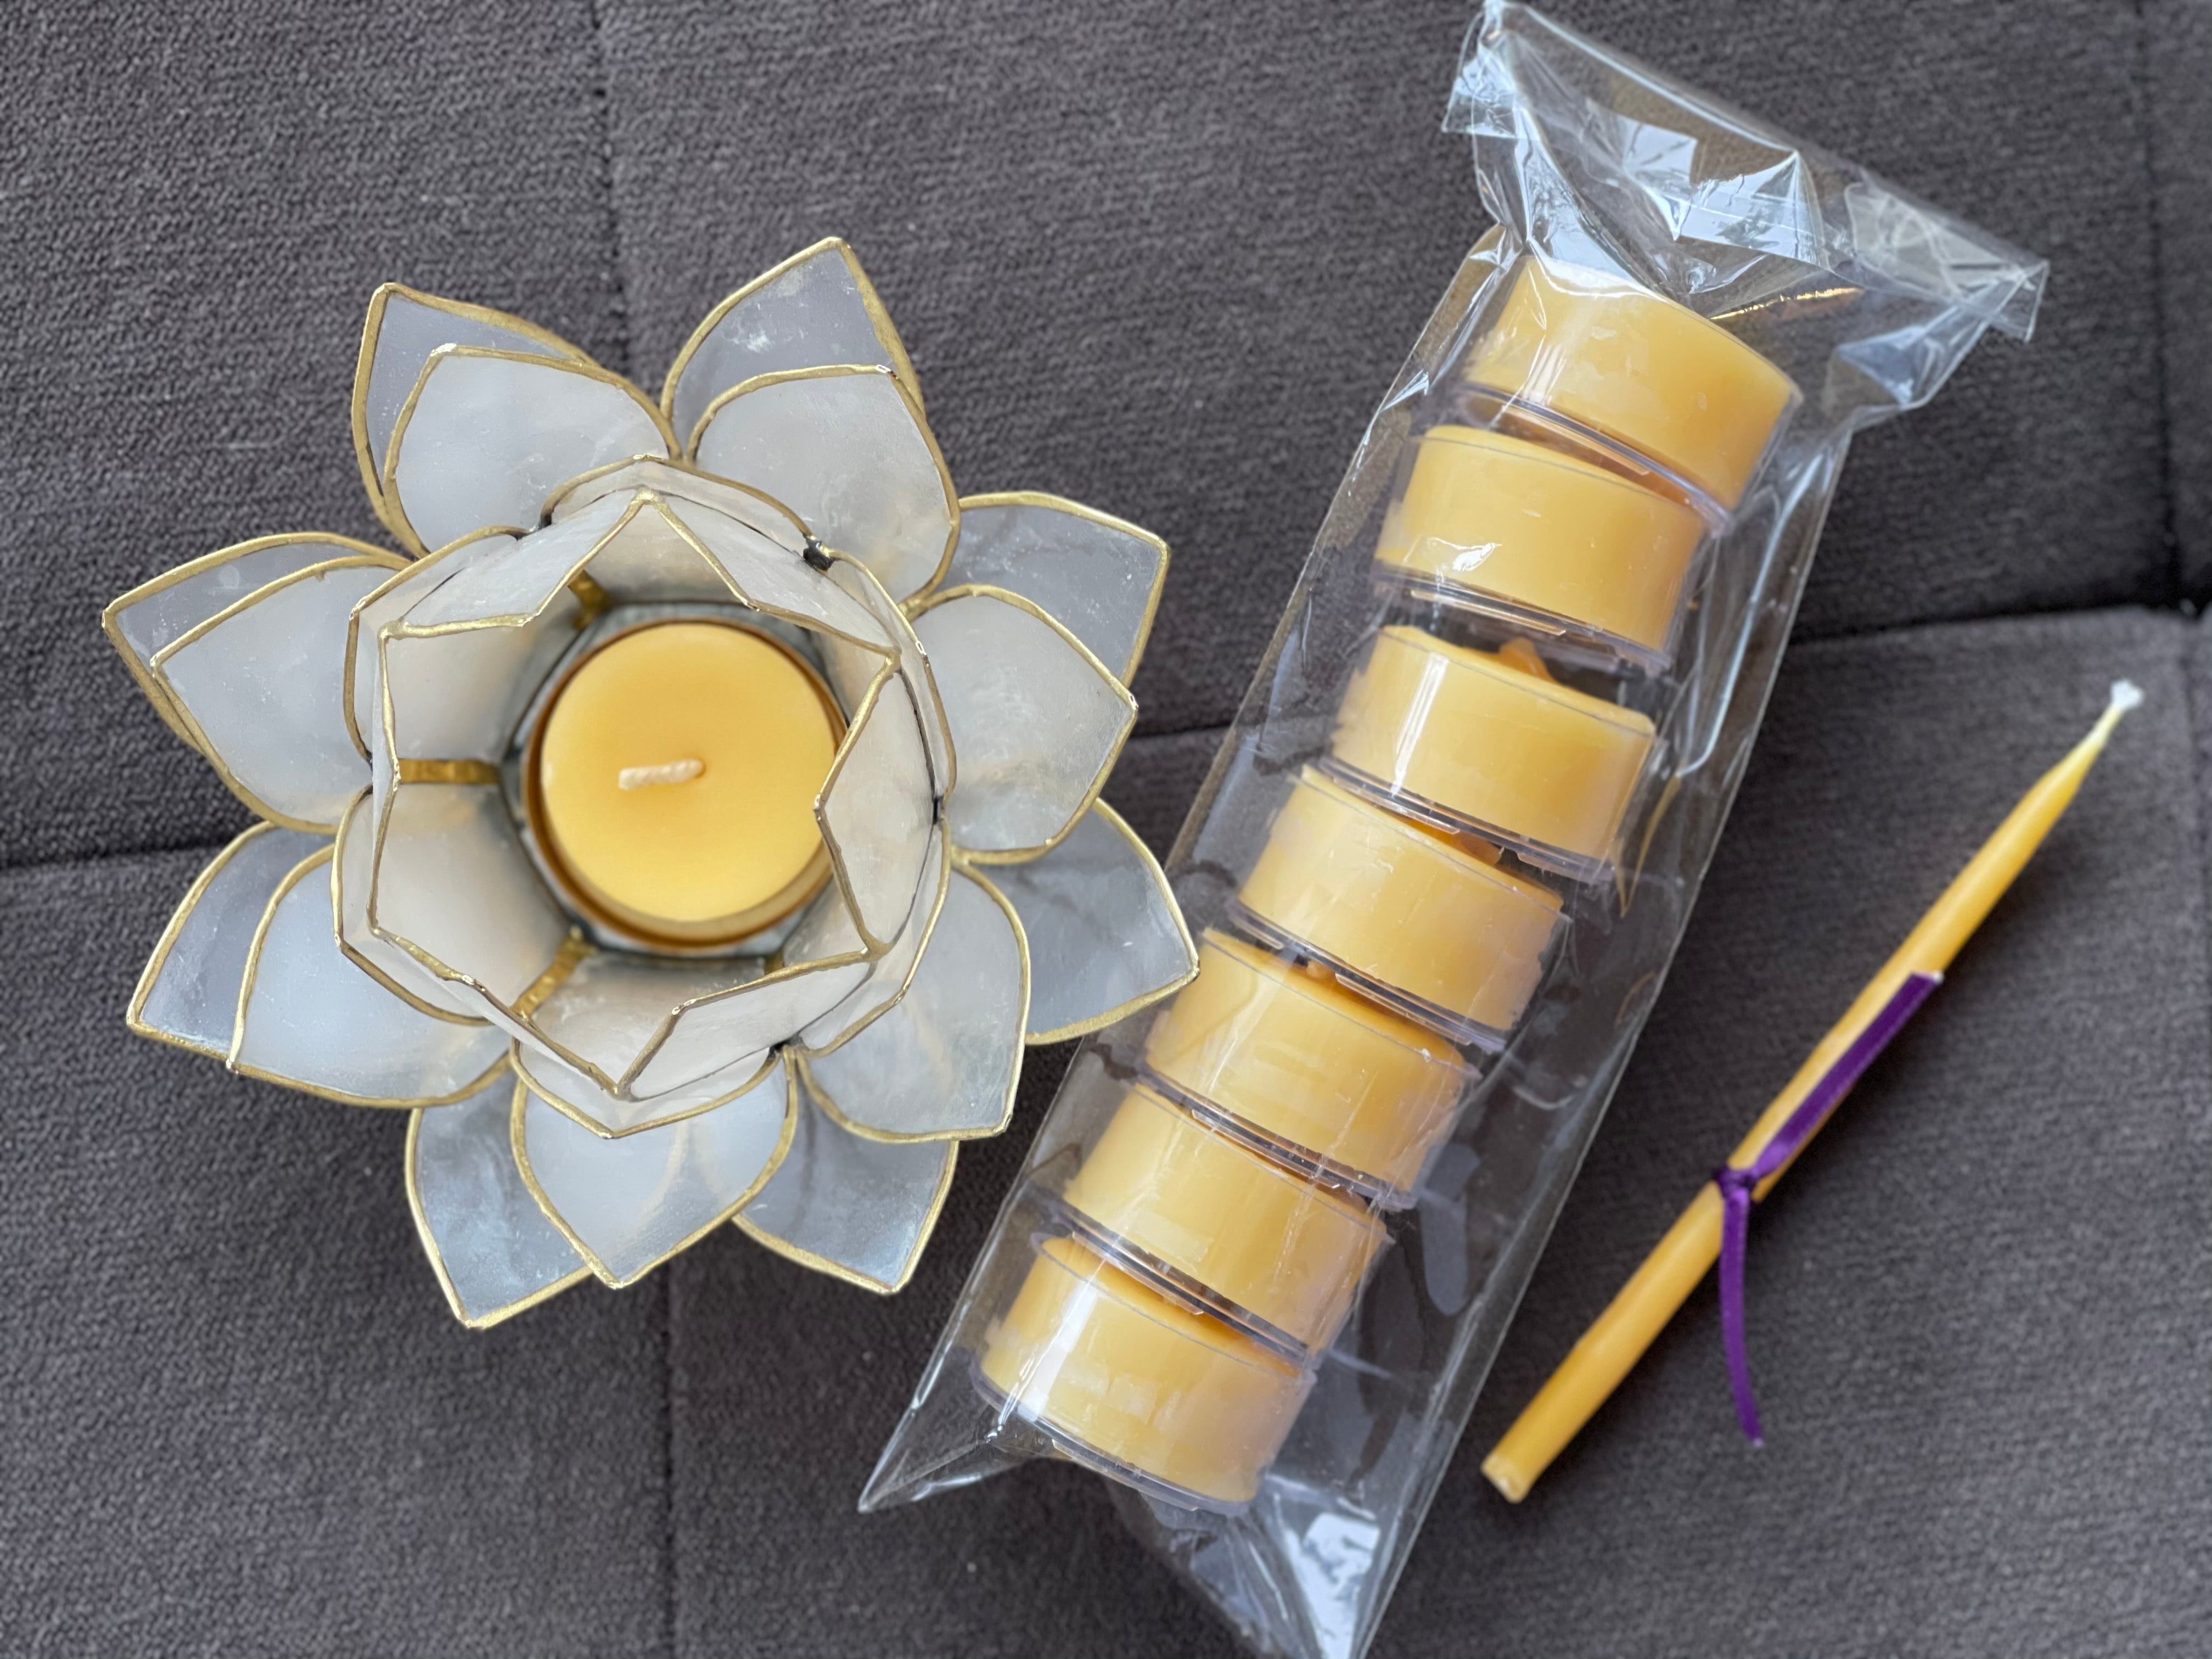 Translucent Flora Tealight Holder, 7 Tealights, Candle Lighter Gift Set